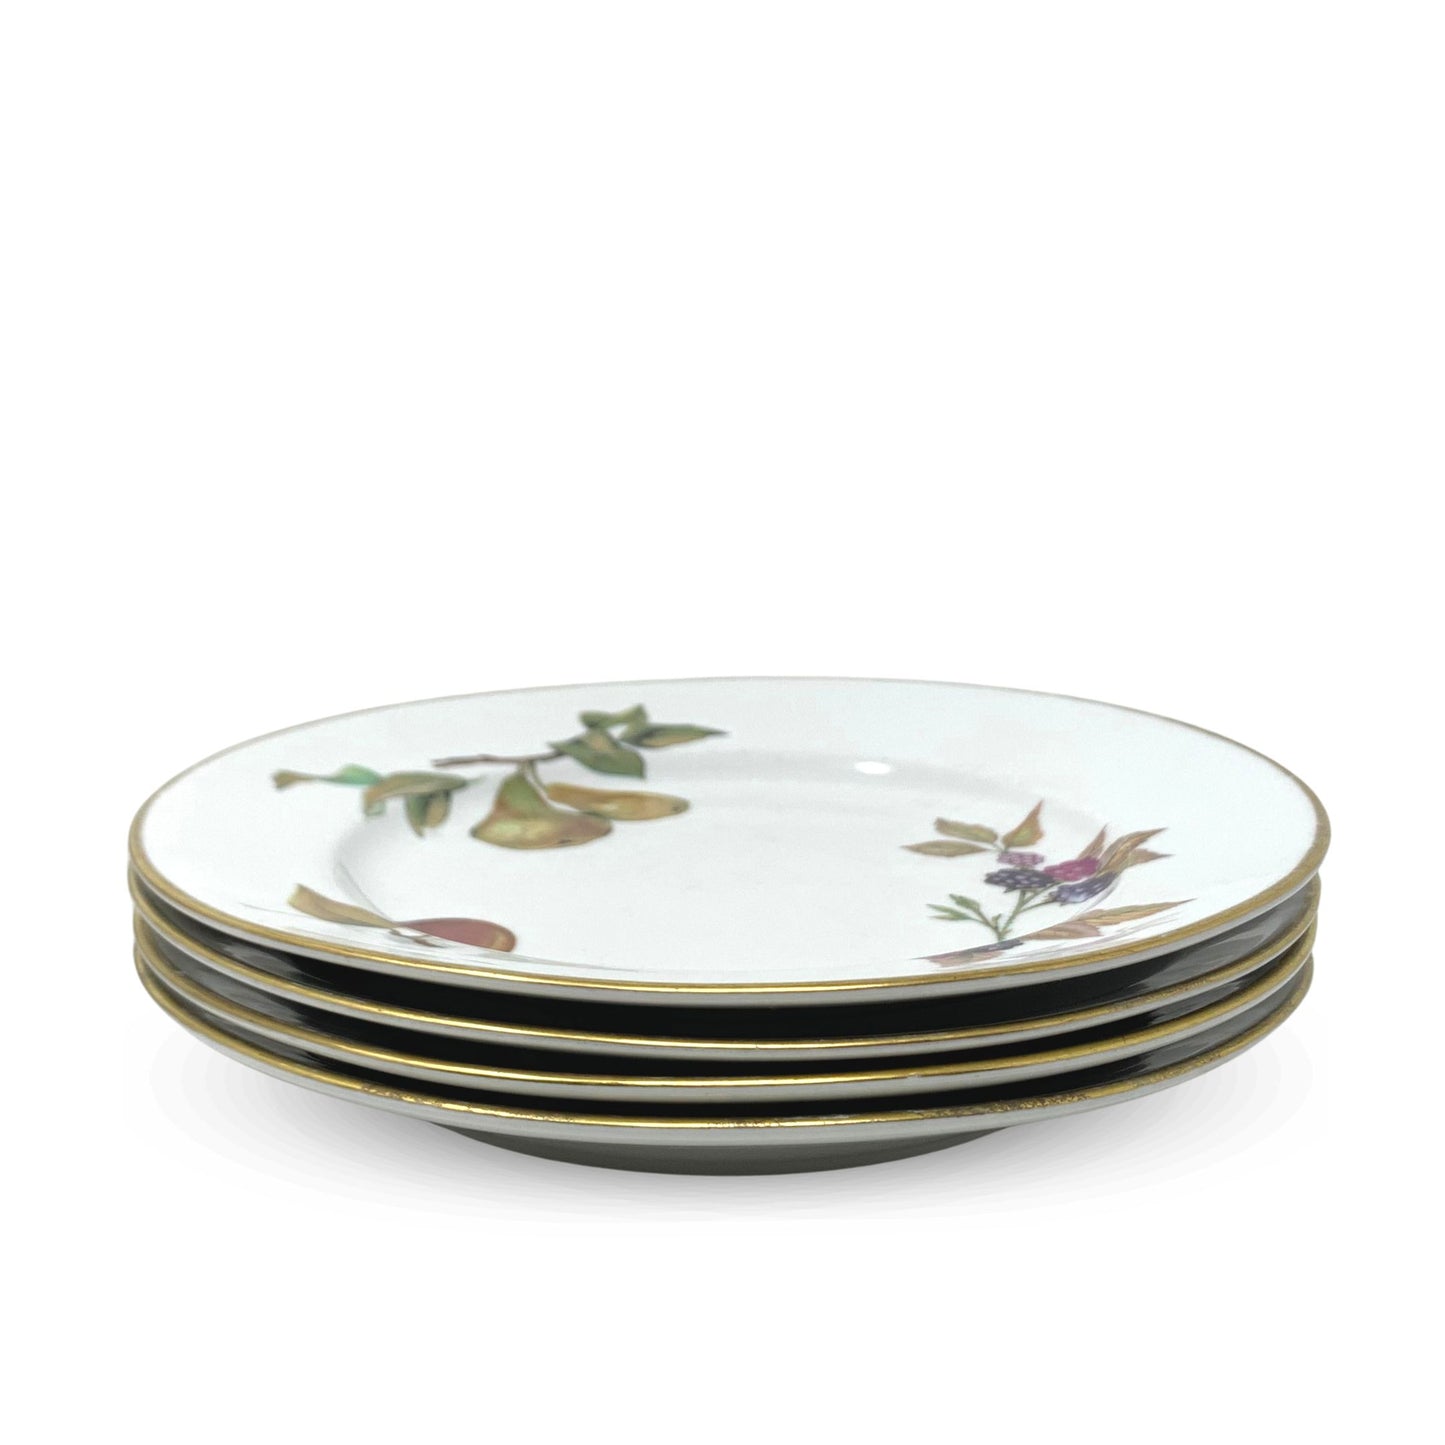 Royal Worcester "Evesham" Gold Salad Plates (4)